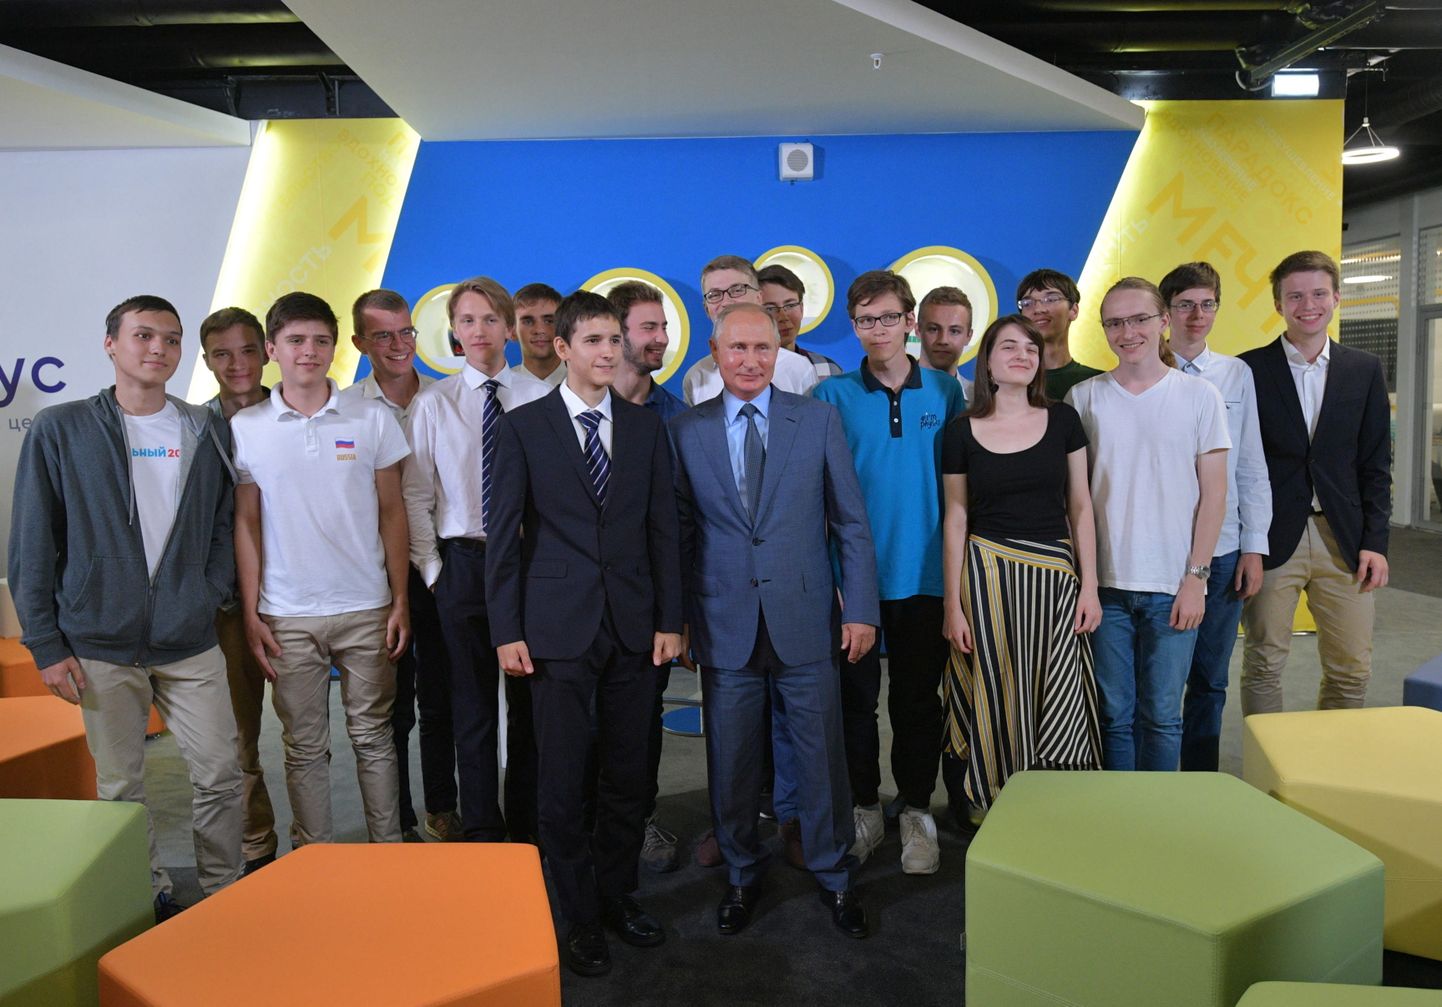 Skolēnu tikšanās ar Vladimiru Putinu. Zēnam, kas stāv pirmais no kreisas, zem jakas ir krekls, uz kura daļēji redzams uzraksts "Navaļnijs 2018"